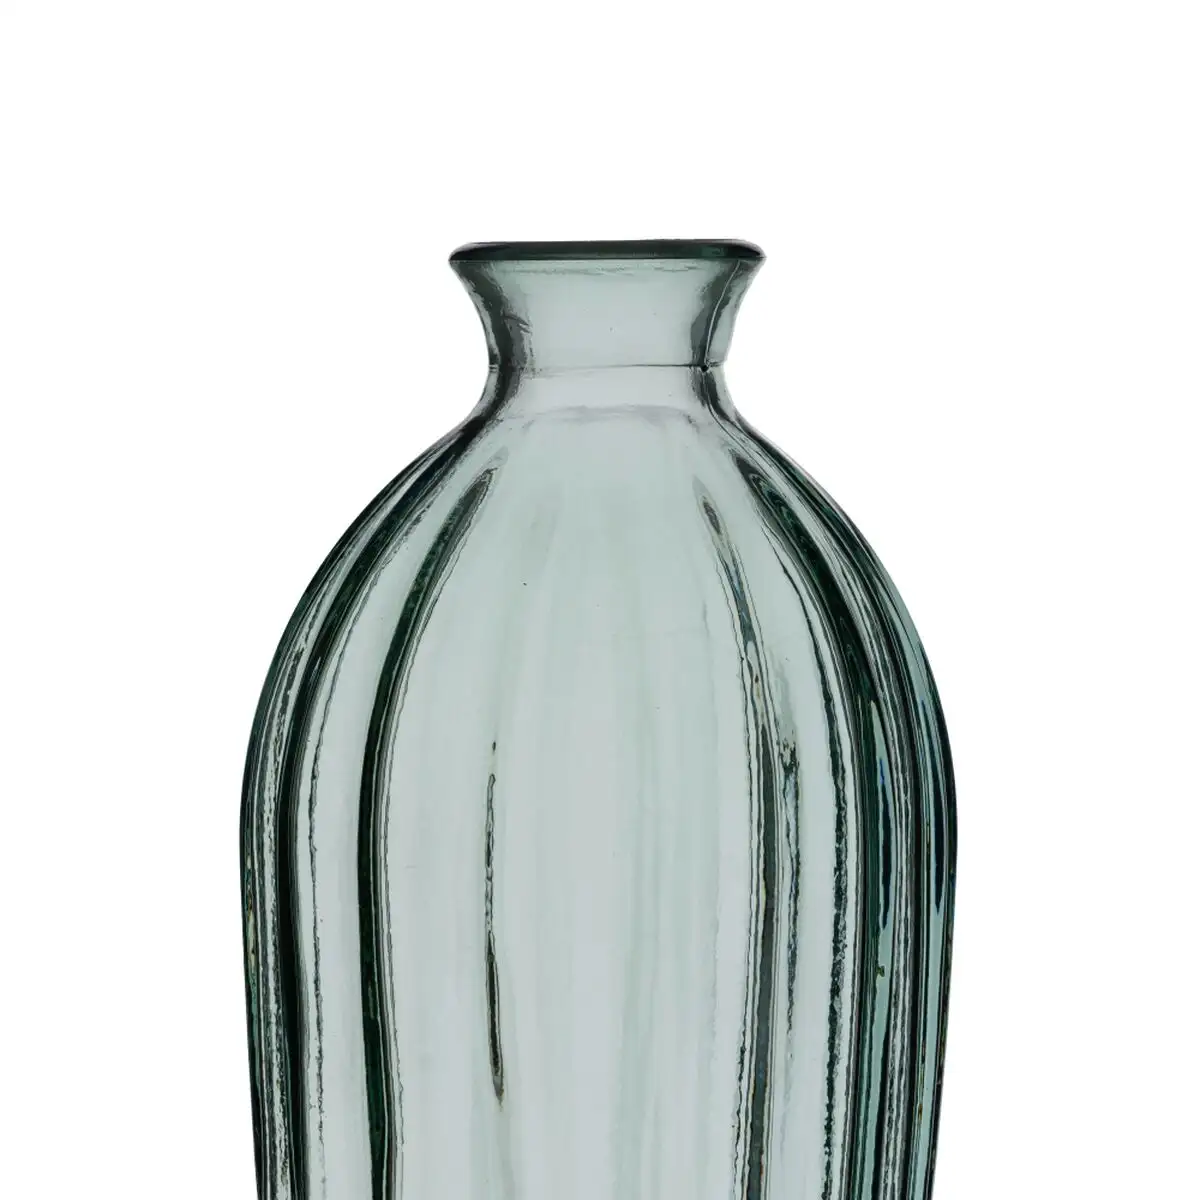 Vase verre recycle vert 12 x 12 x 29 cm_4422. DIAYTAR SENEGAL - Là où le Shopping Devient une Expérience. Naviguez à travers notre catalogue diversifié et découvrez des produits qui ajoutent de la couleur et de la passion à votre vie.